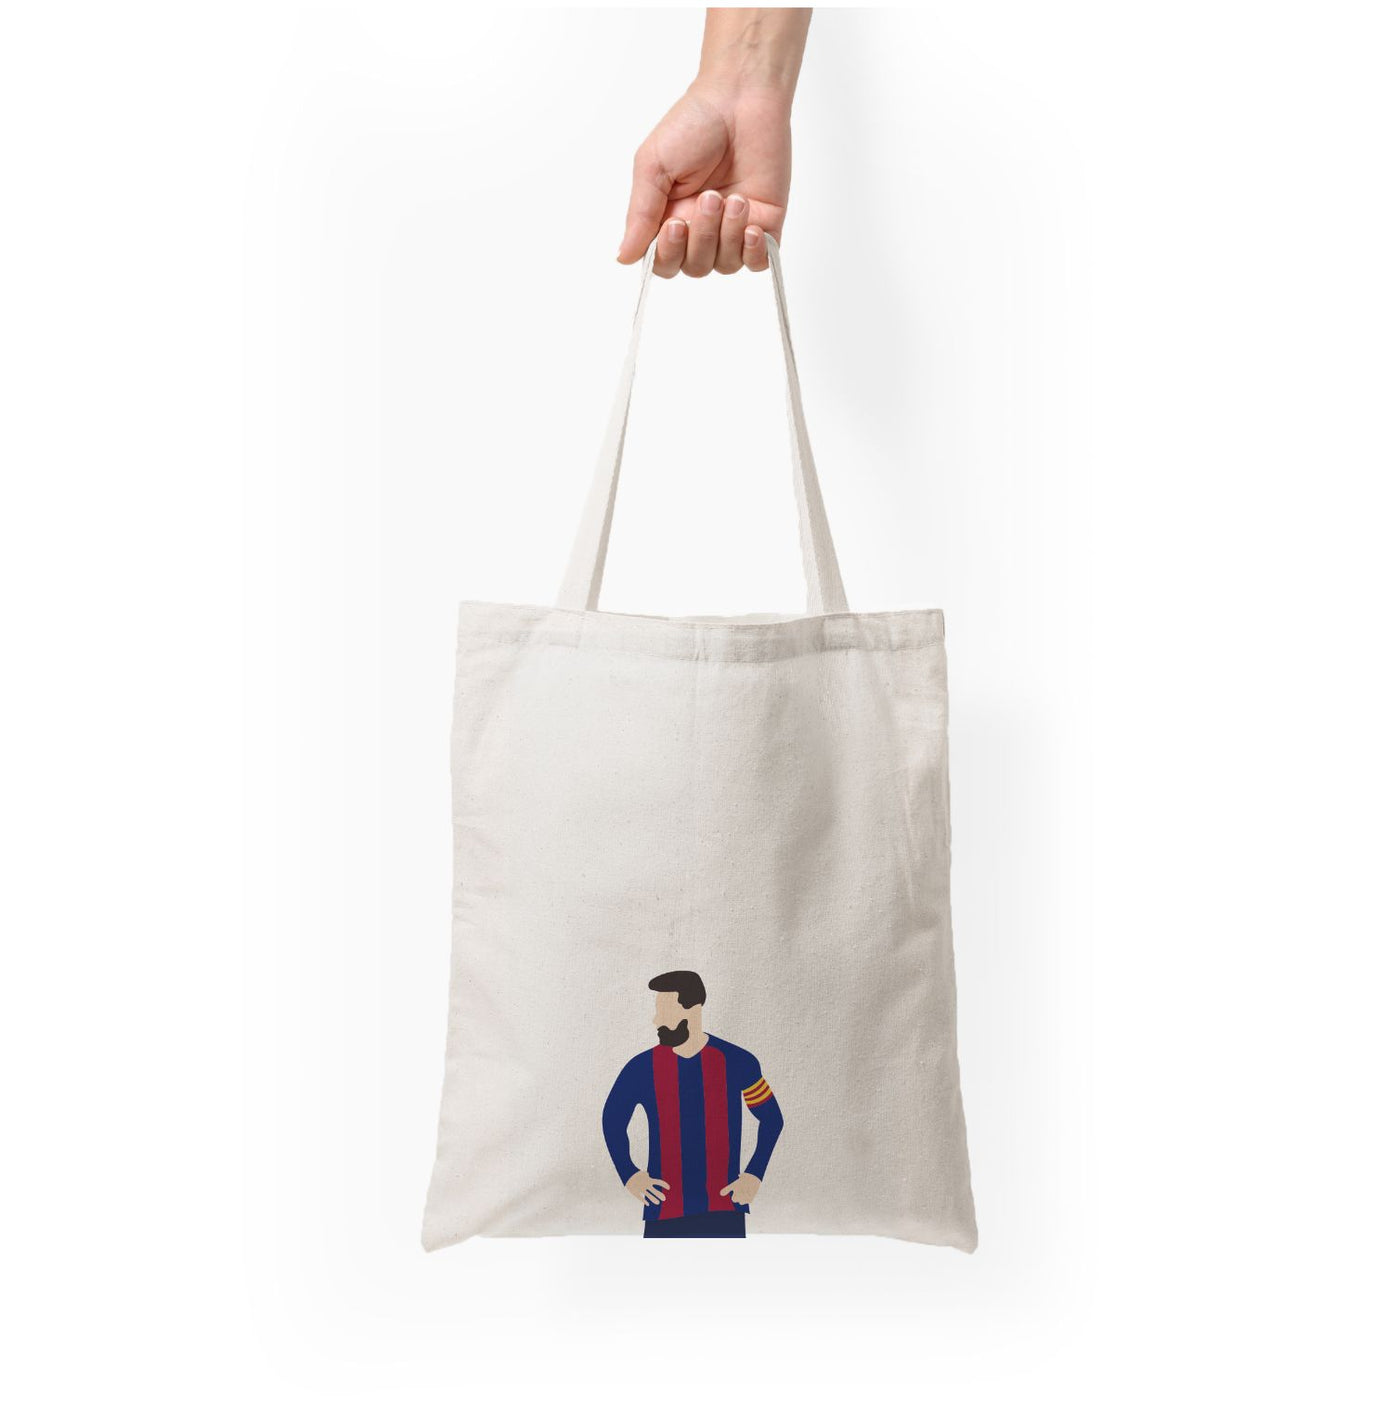 Messi Barca Tote Bag